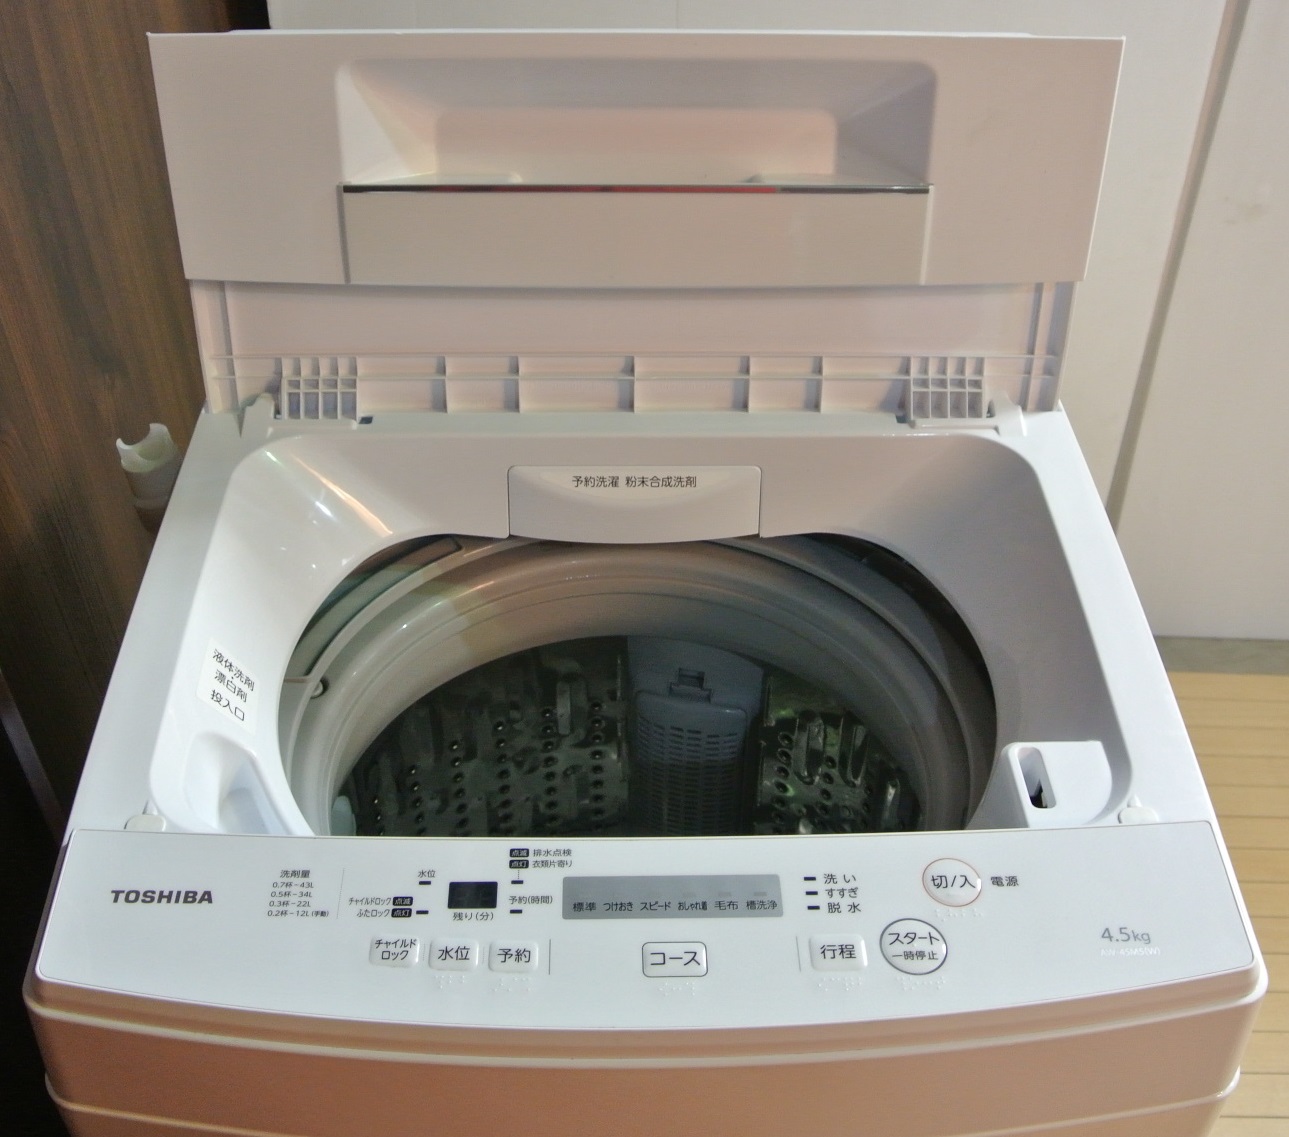 TOSHIBA（東芝） 2017年製造 4.5㎏全自動洗濯機 AW-45M5 群馬県伊勢崎市リサイクルセンターふれんど | 群馬のリサイクル